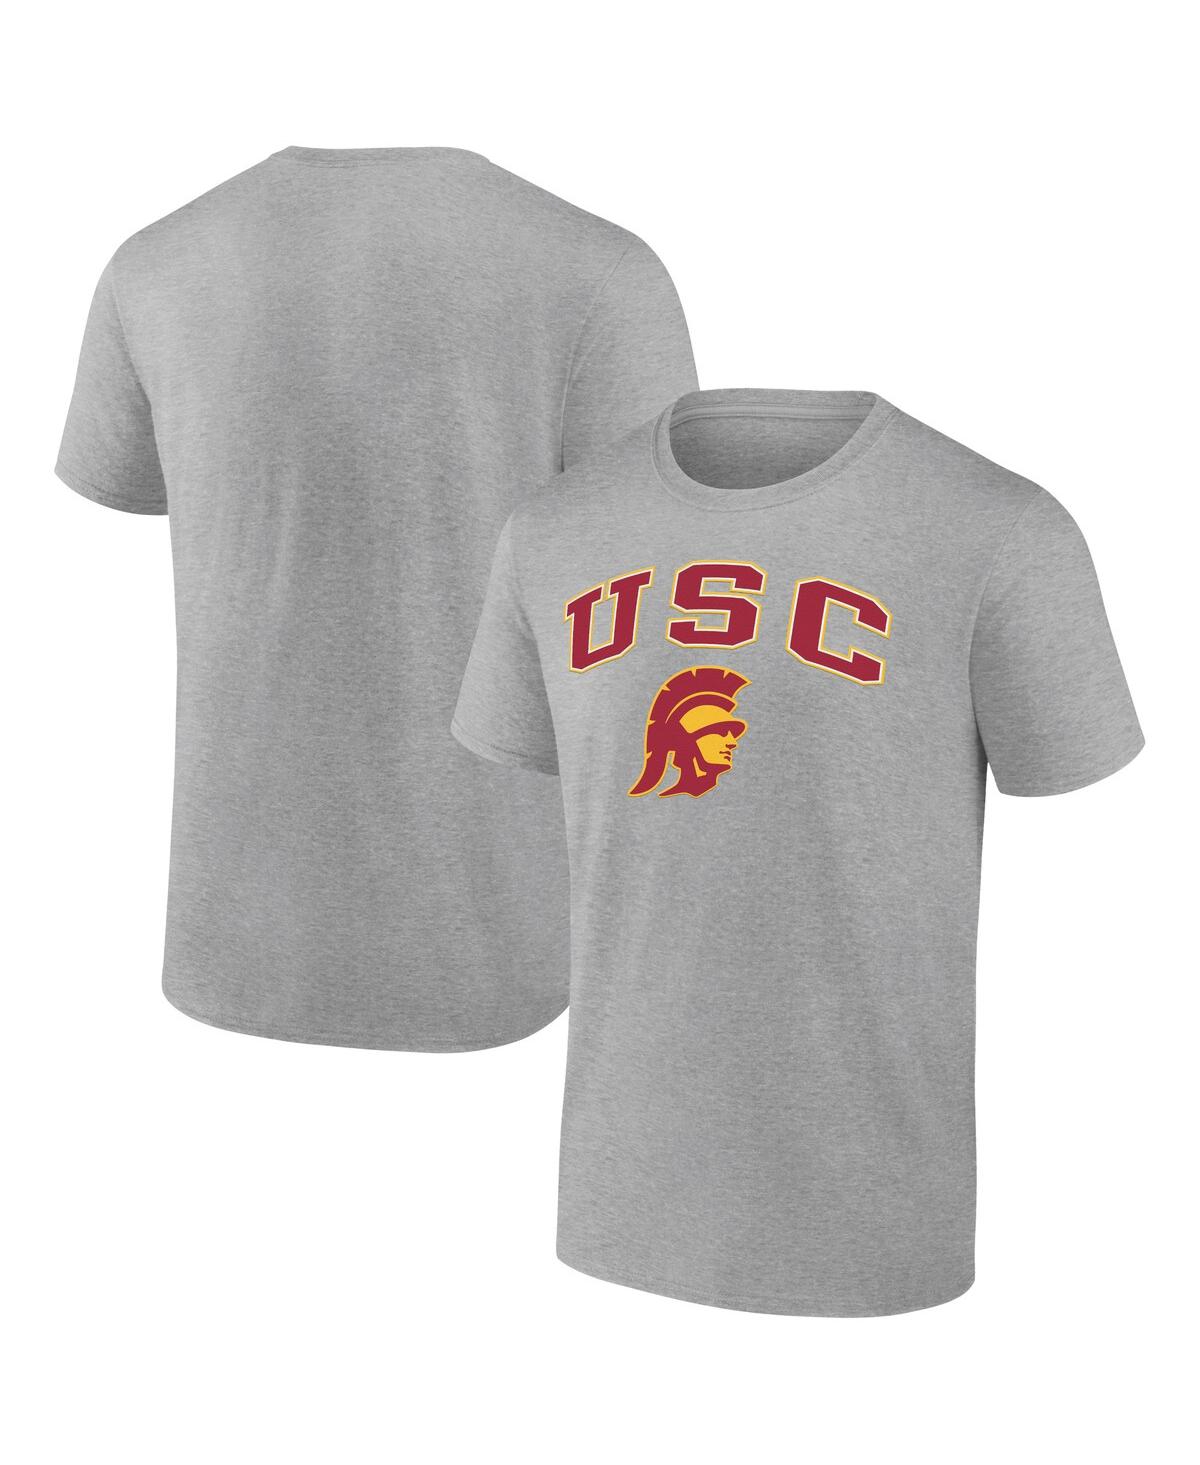 Fanatics Men's  Gray Usc Trojans Campus T-shirt